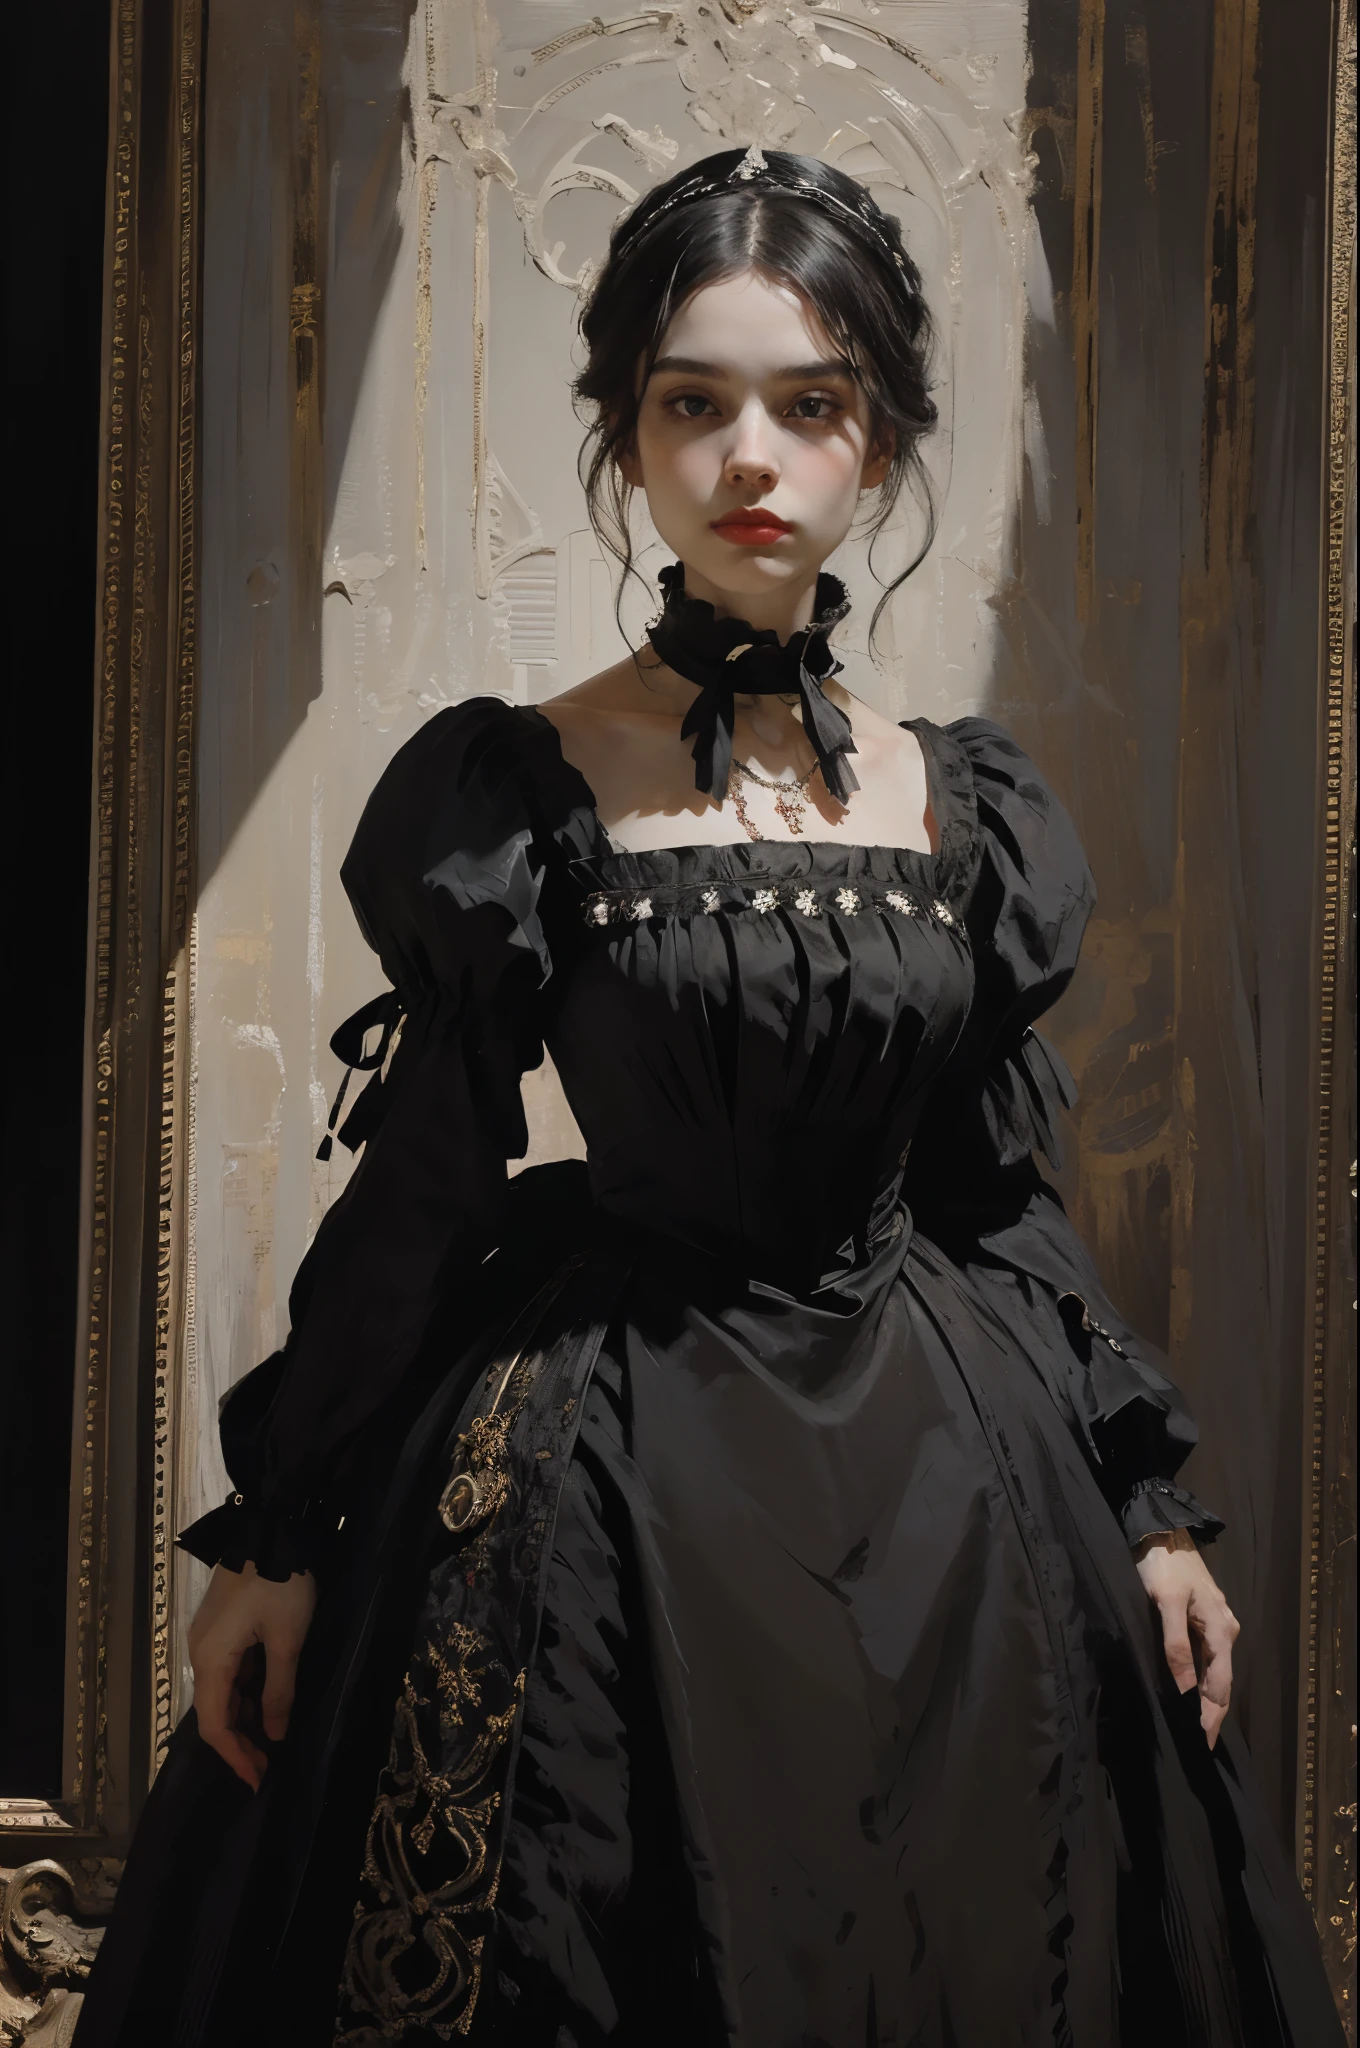 классическая живопись, ((Портрет: 1.3)), девушка в черном платье, официальное платье викторианского стиля, (Викторианское вечернее платье: 1.3), у платья есть воротник-стойка, молодая девушка 25 лет, бледная кожа, стройный, монохромное изображение с акцентным цветом, красное рубиновое ожерелье,
